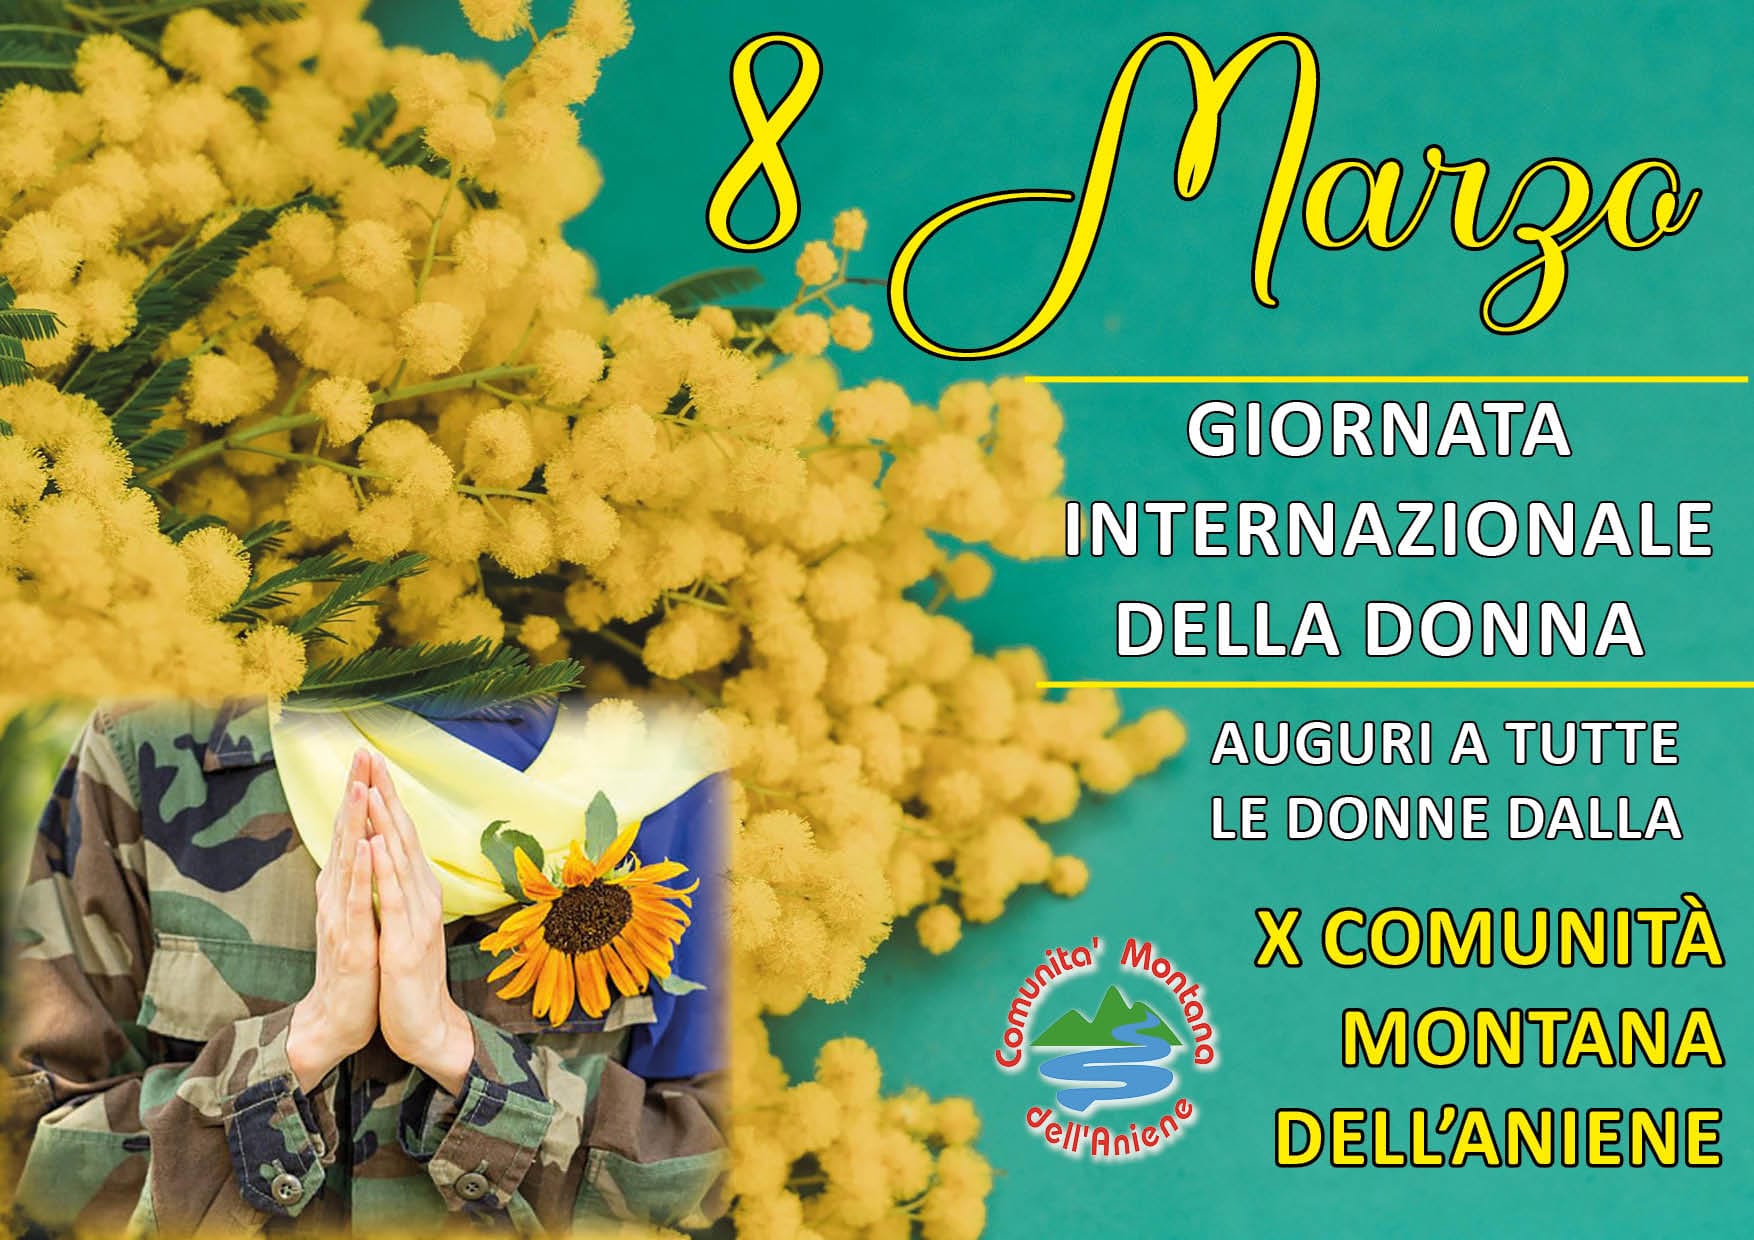 https://www.agenziaeventi.org/immagini_news/2812/x-comunita-montana-dell-aniene-auguri-a-tutte-le-donne-2812.jpg